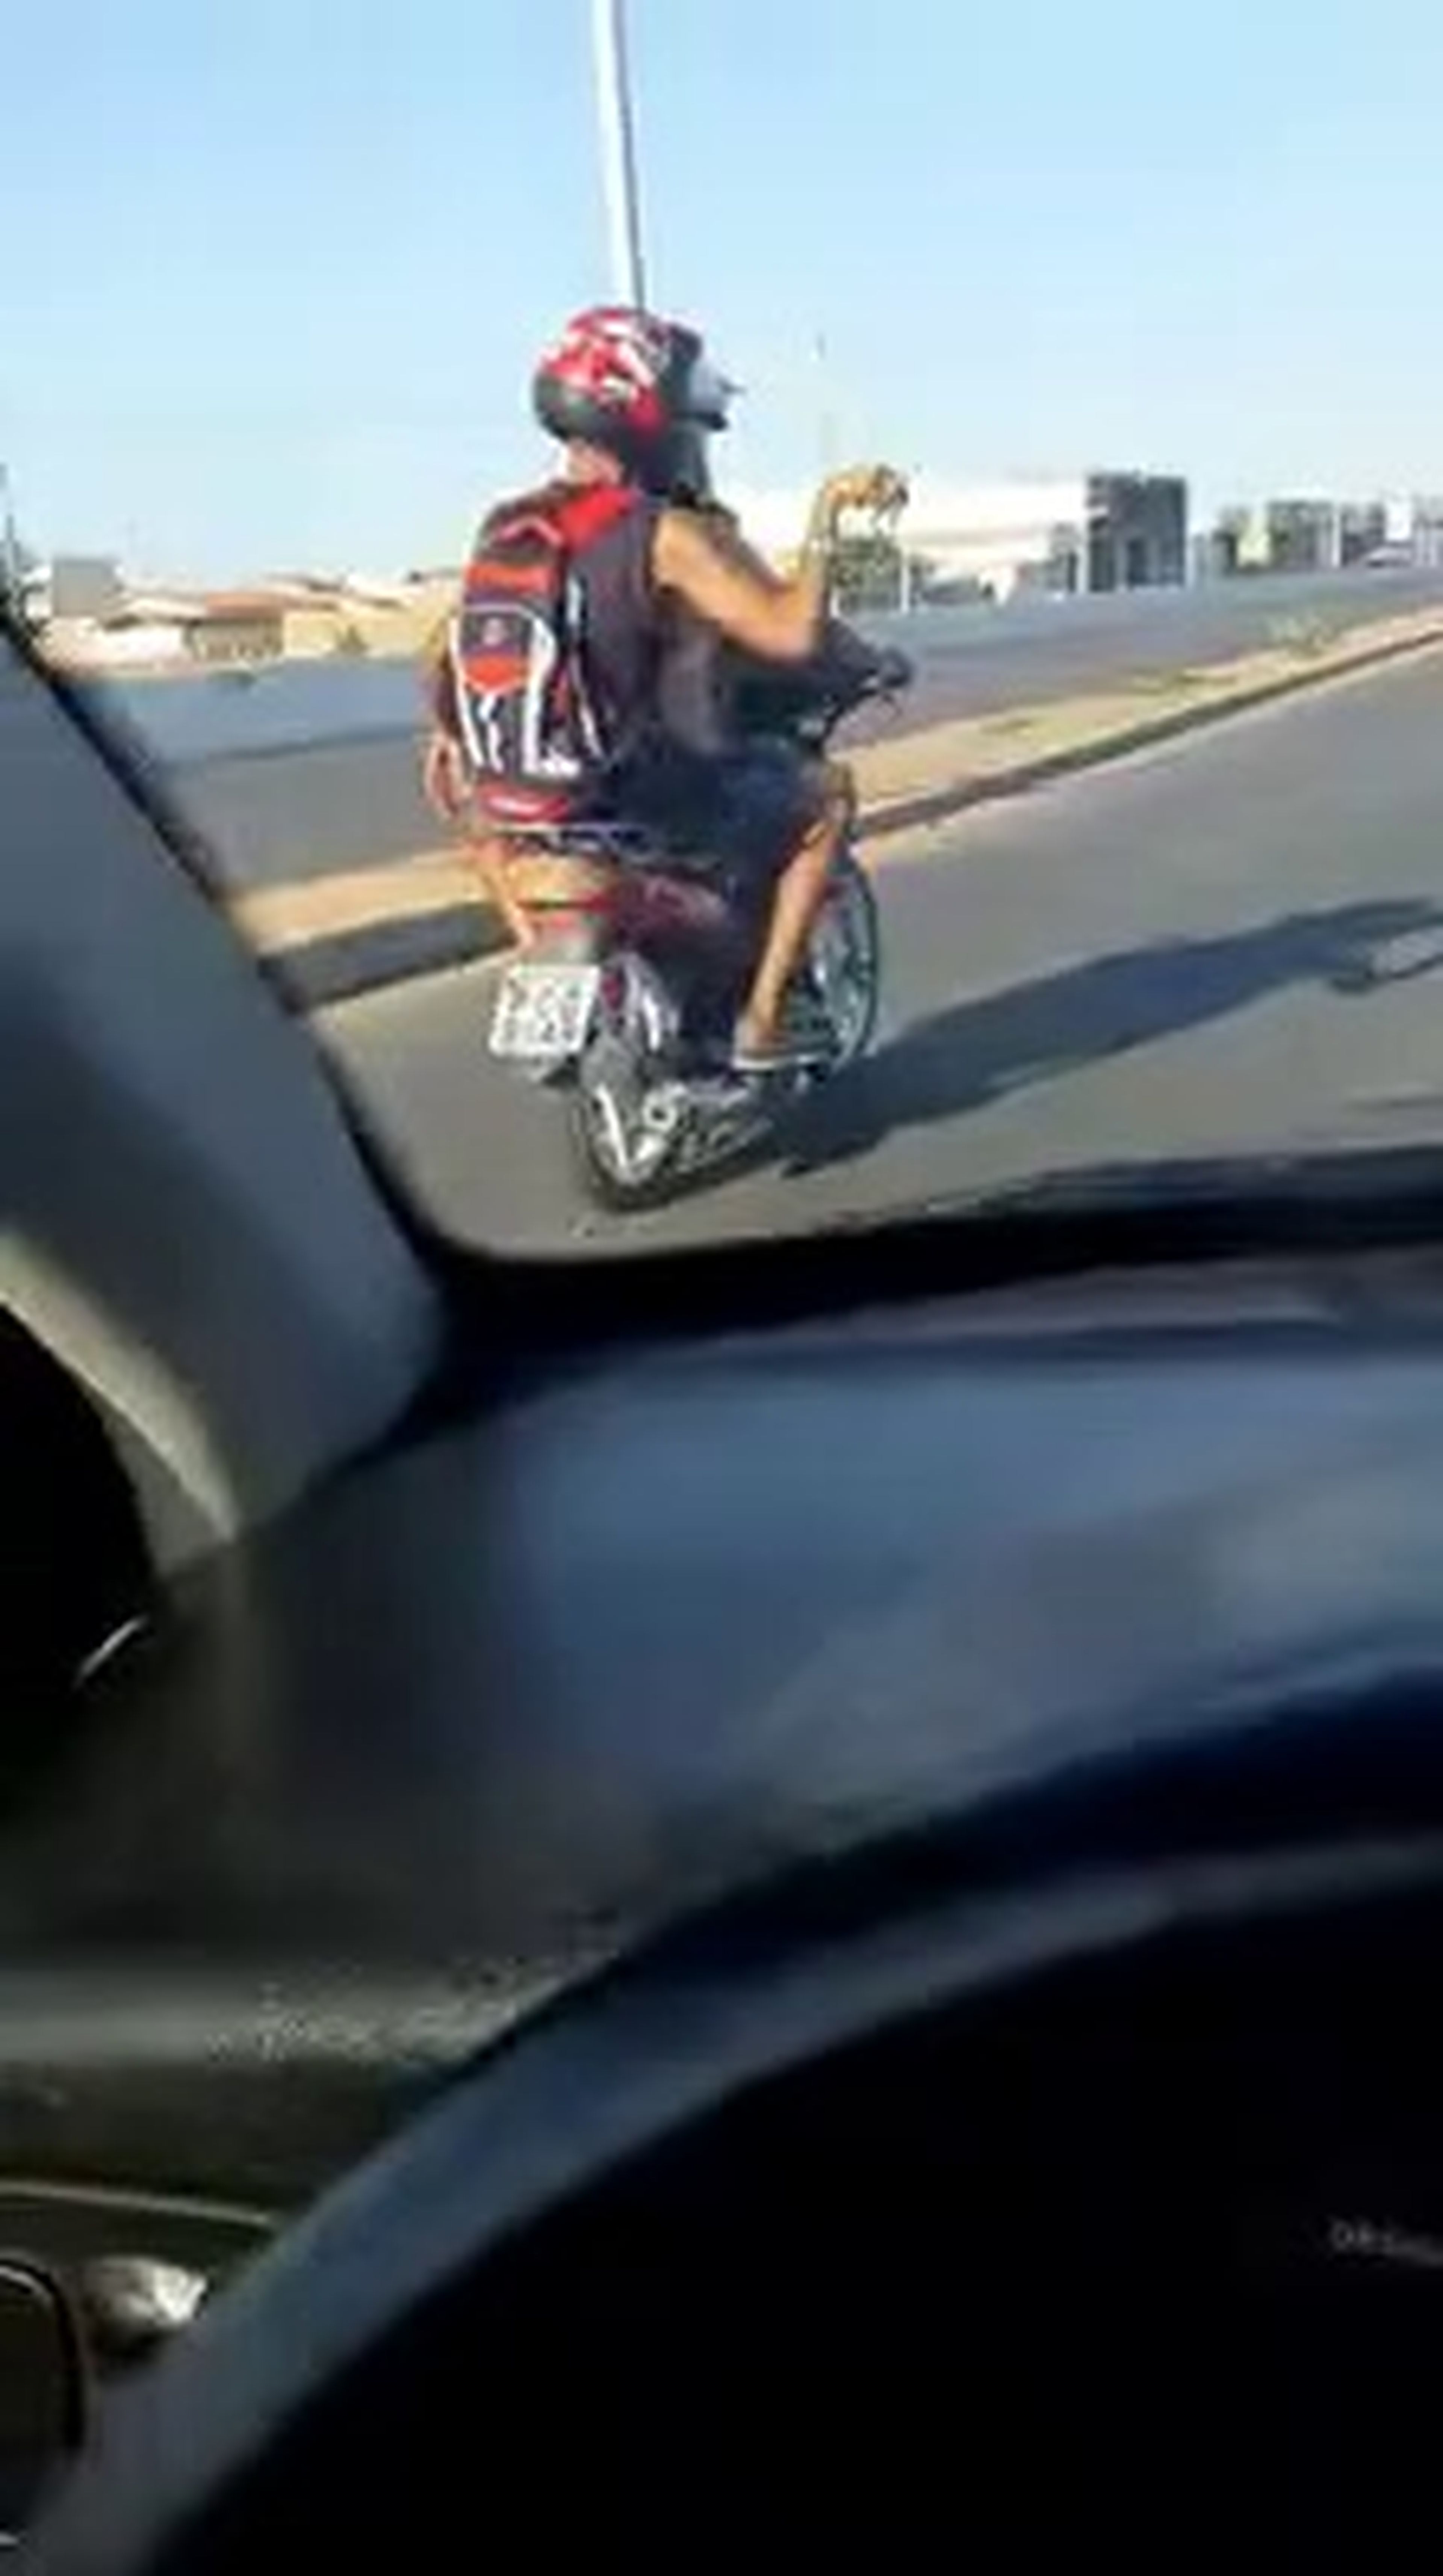 VÍDEO: Lo último que teníamos que ver, un perro conduciendo una moto...